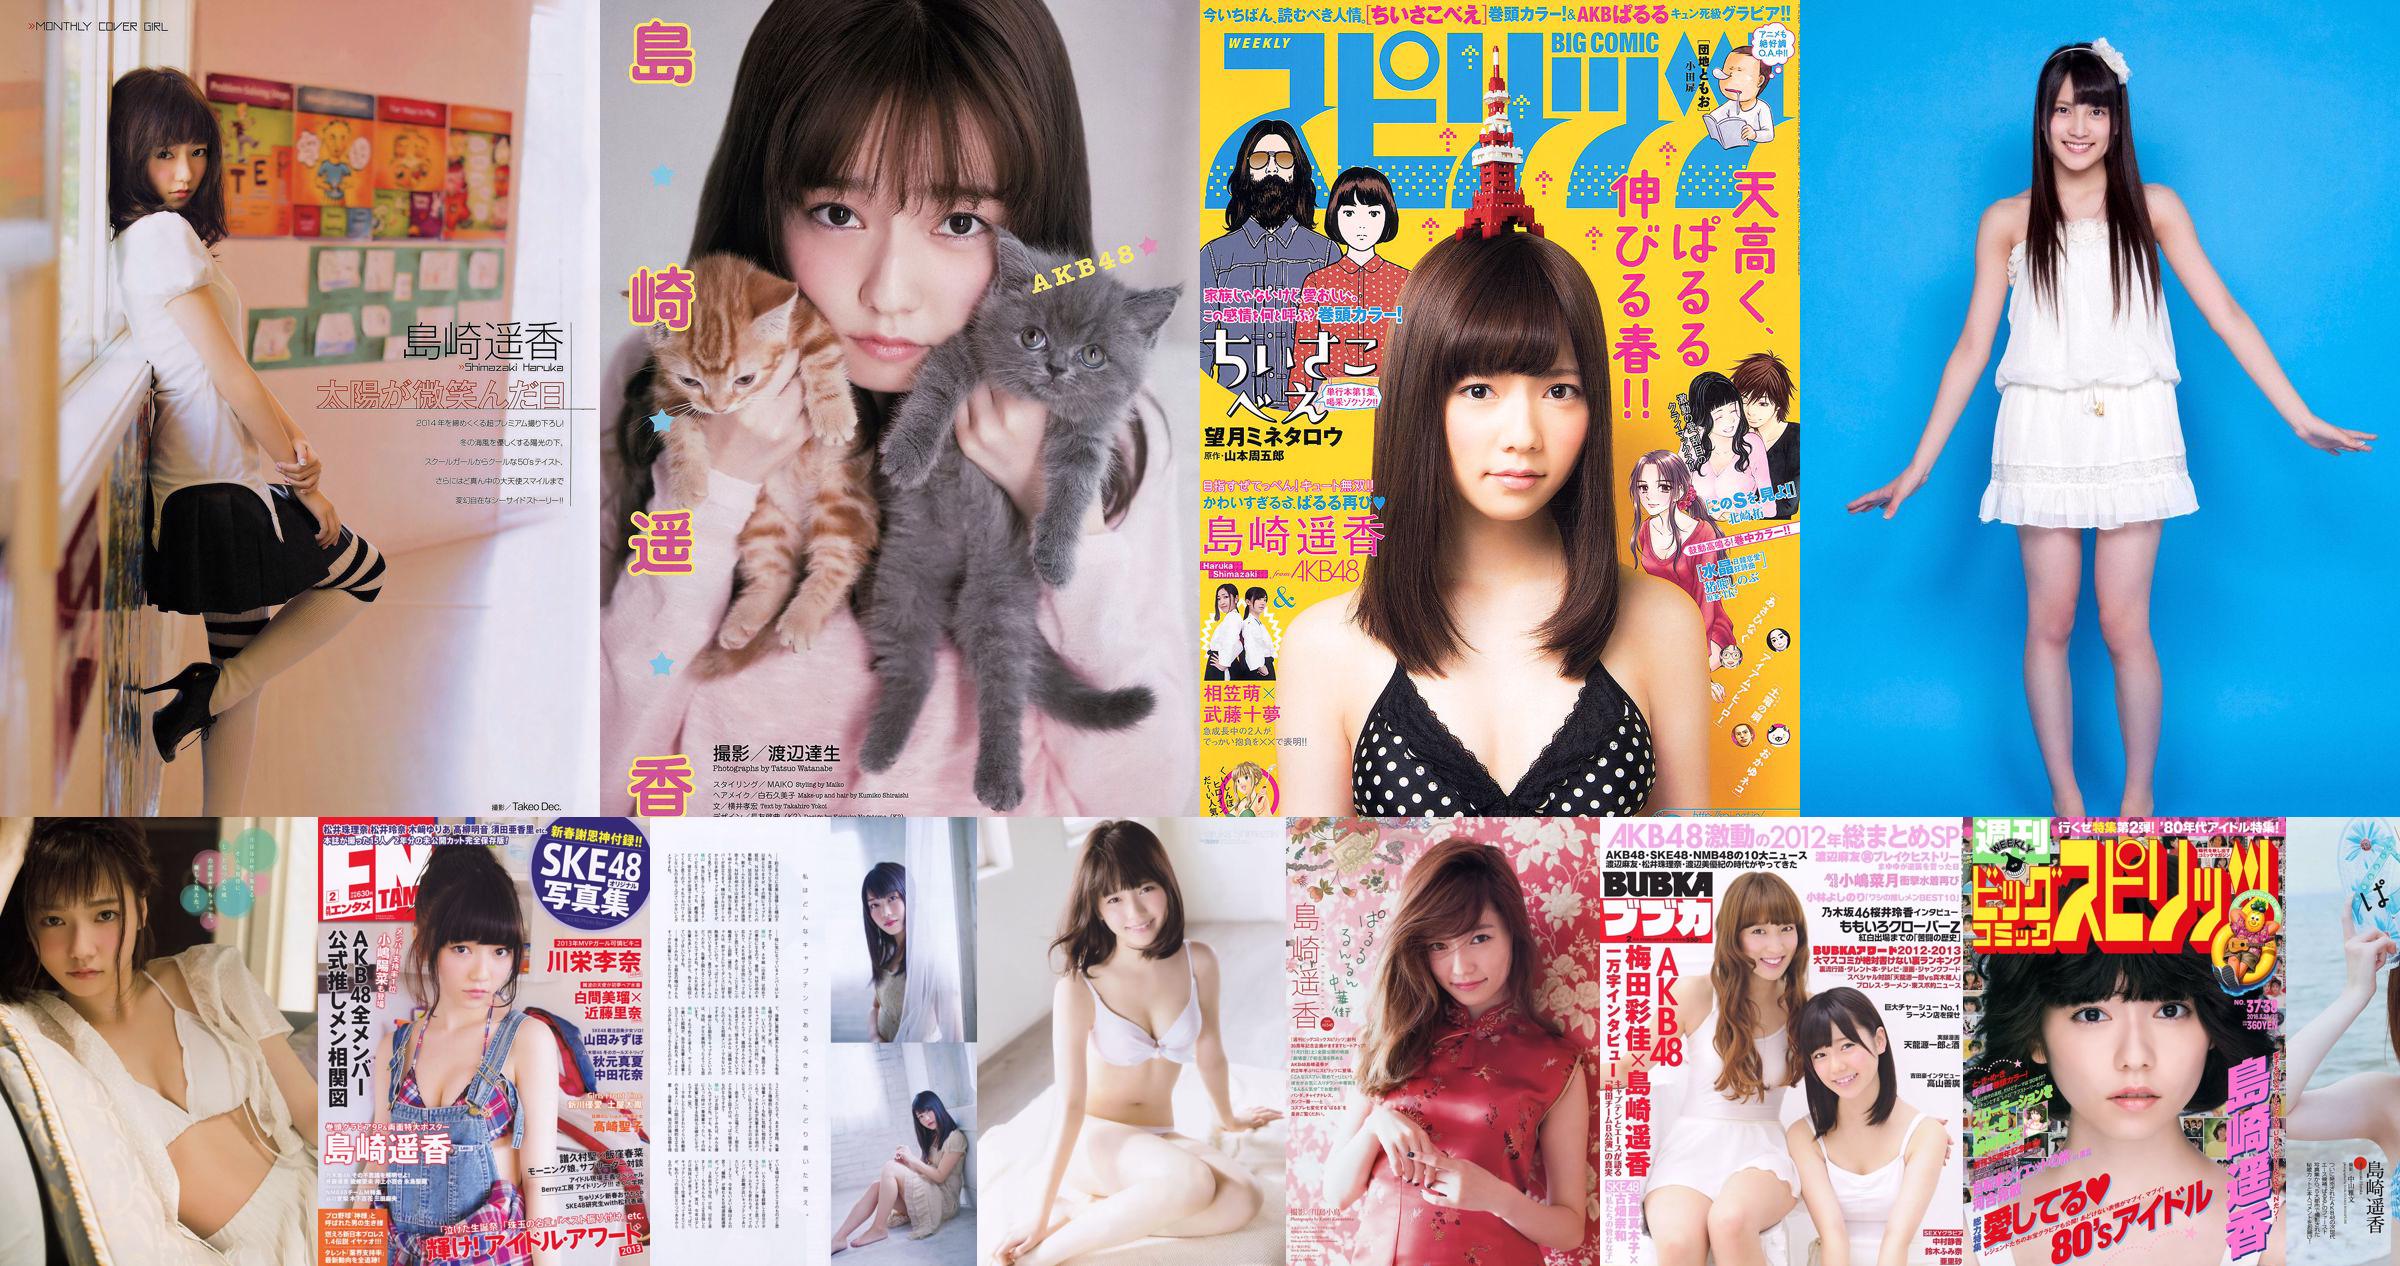 Shimazaki Haruka / Iriyama Anna "AKB48 Next Girls 3rd" [YS Web] Vol.396 No.43ba7a Halaman 5